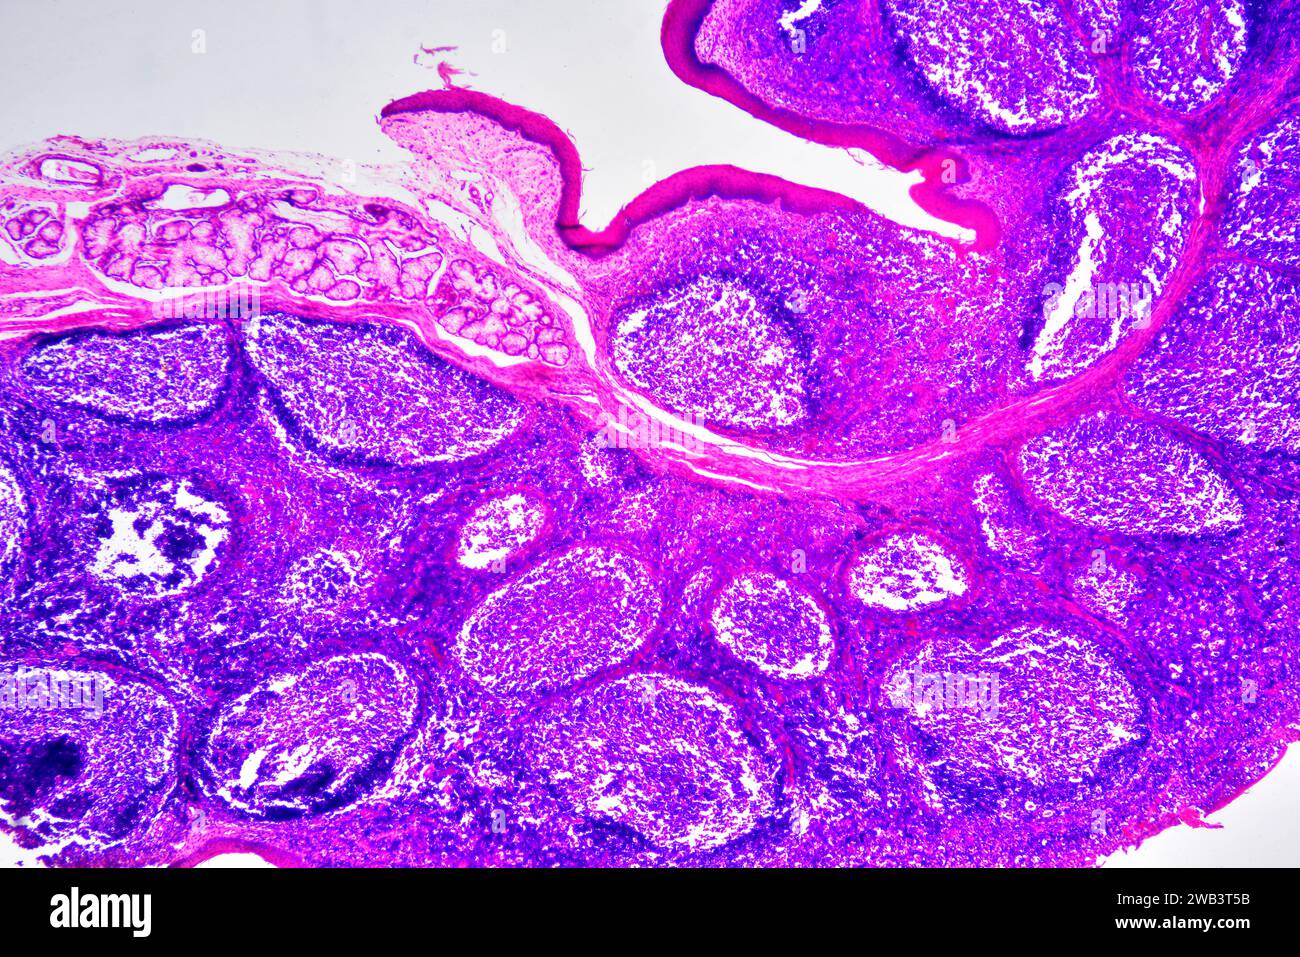 Sección de amígdalas palatinas humanas que muestra folículos linfoides circulares y glándula secretora. Micrografía de luz, tinción de eosina hematoxilina. X30 cuando se imprime 10 Foto de stock